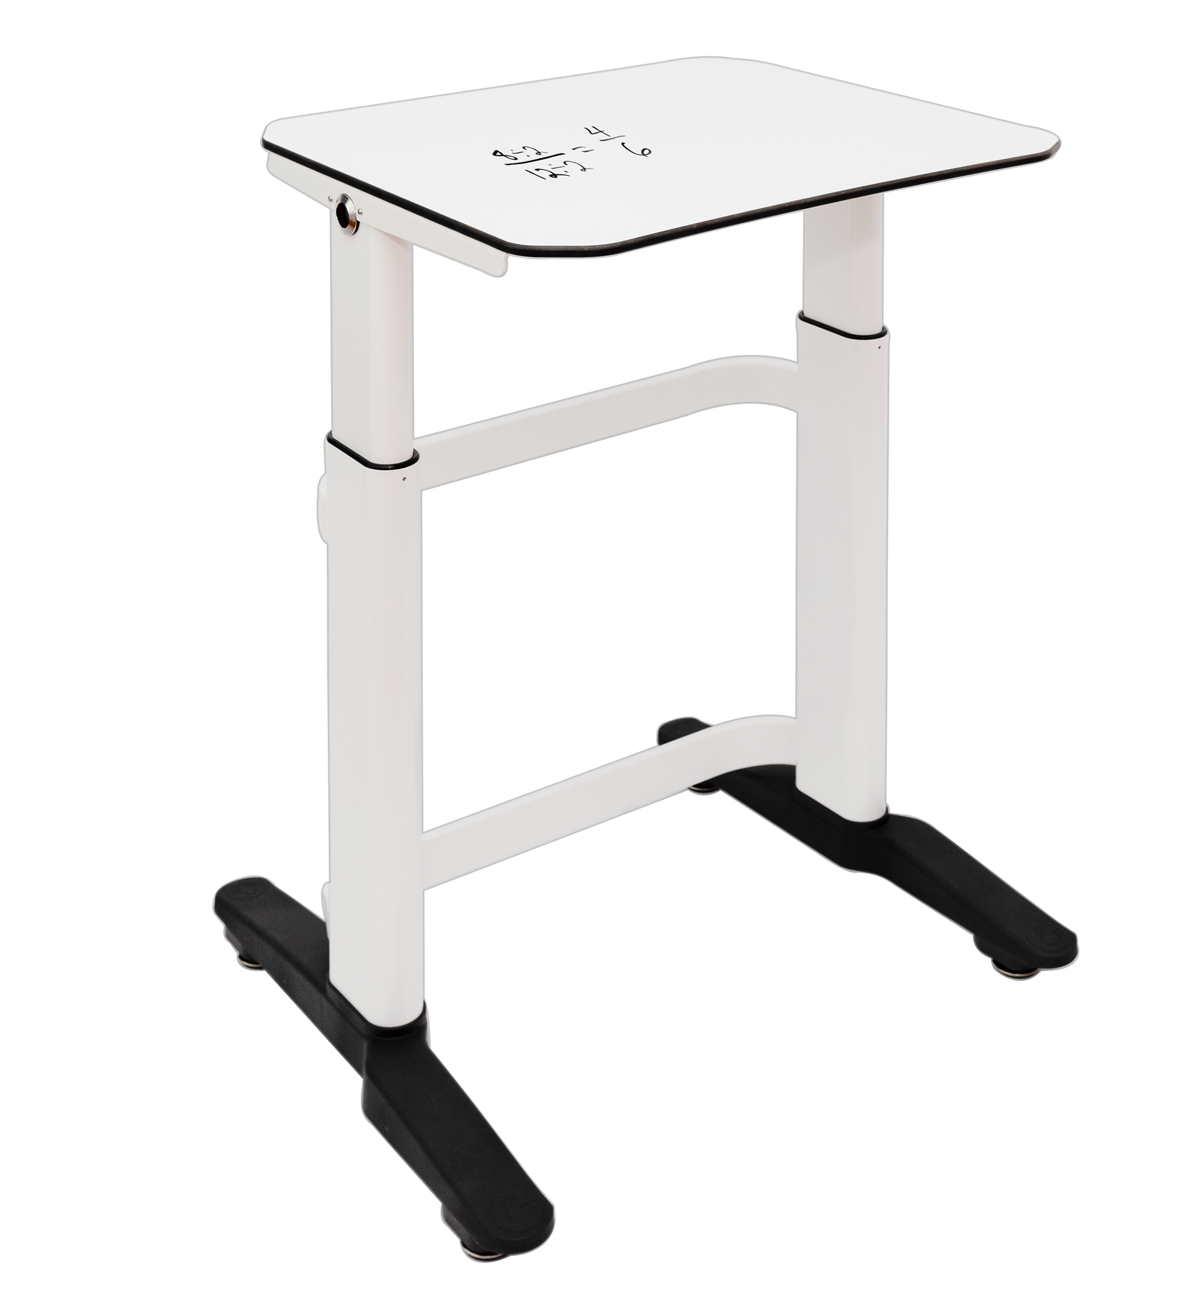 Amperstand-Large Desk-Writable-Levellers